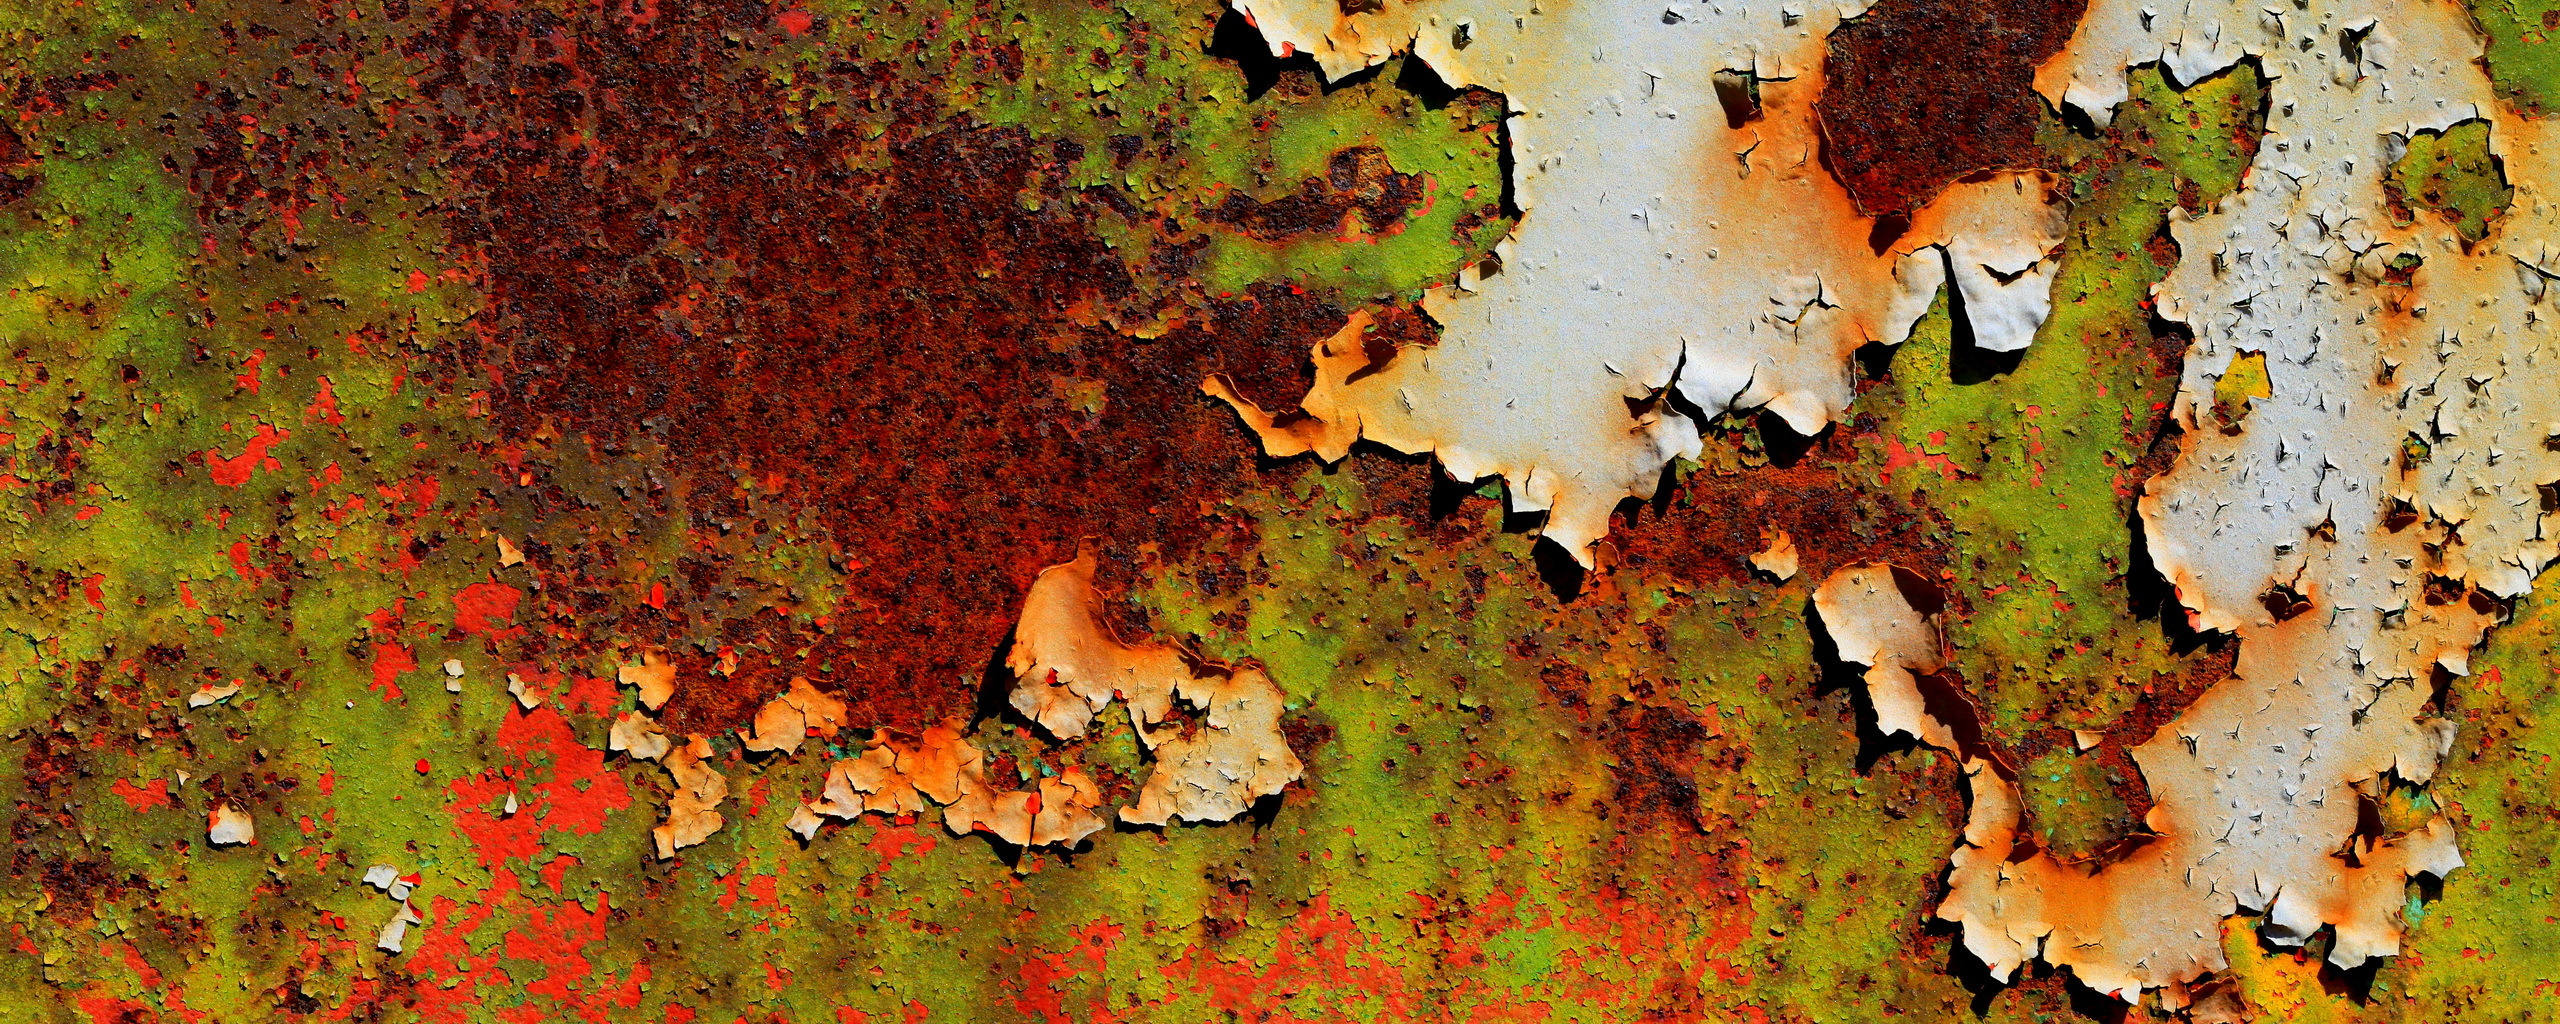 Rust pattern matching фото 105